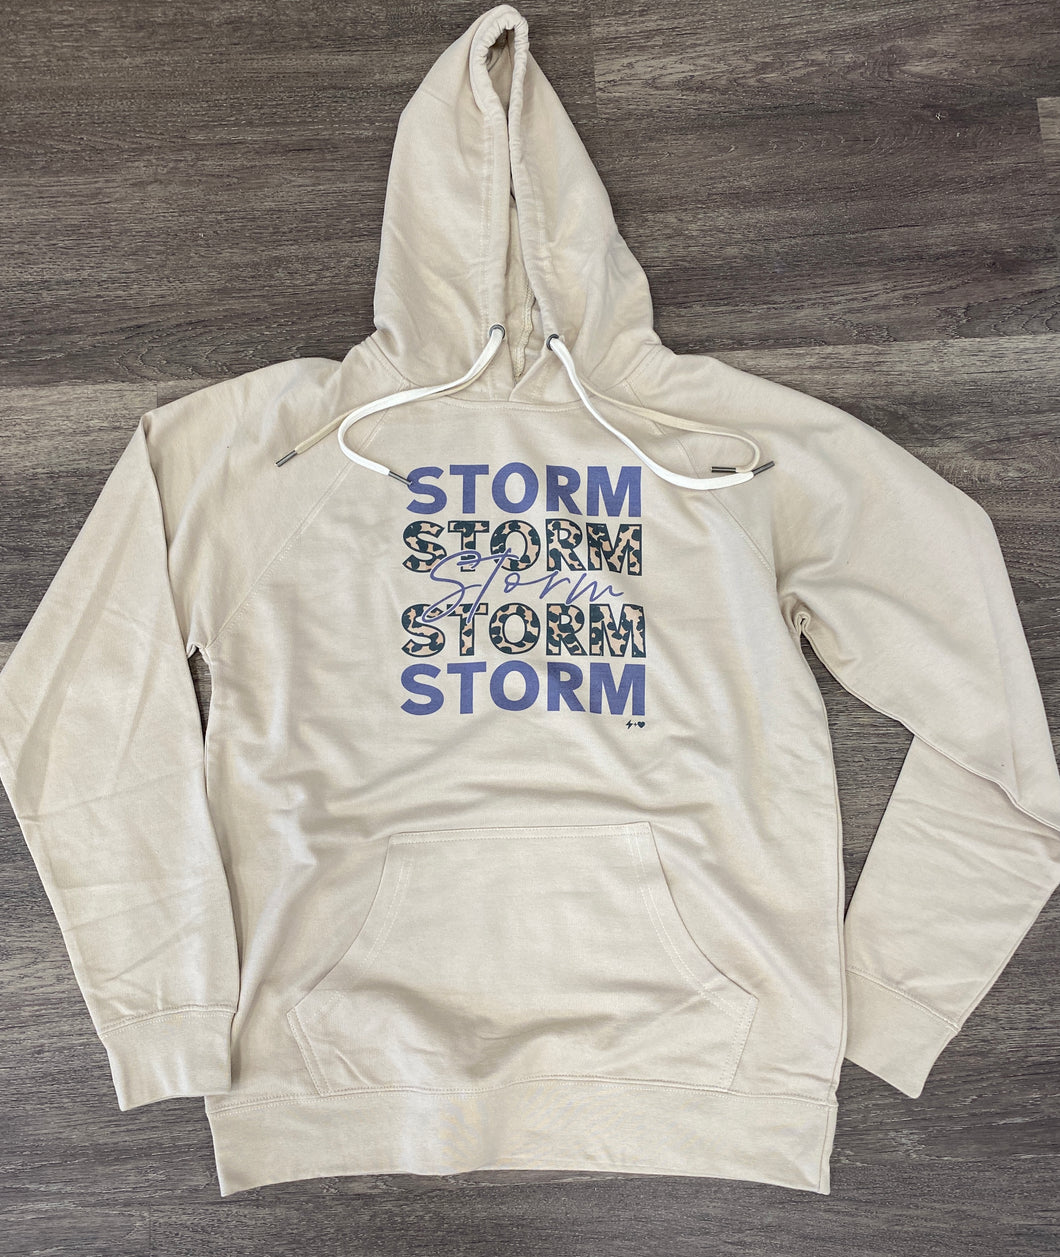 Storm Hoodie